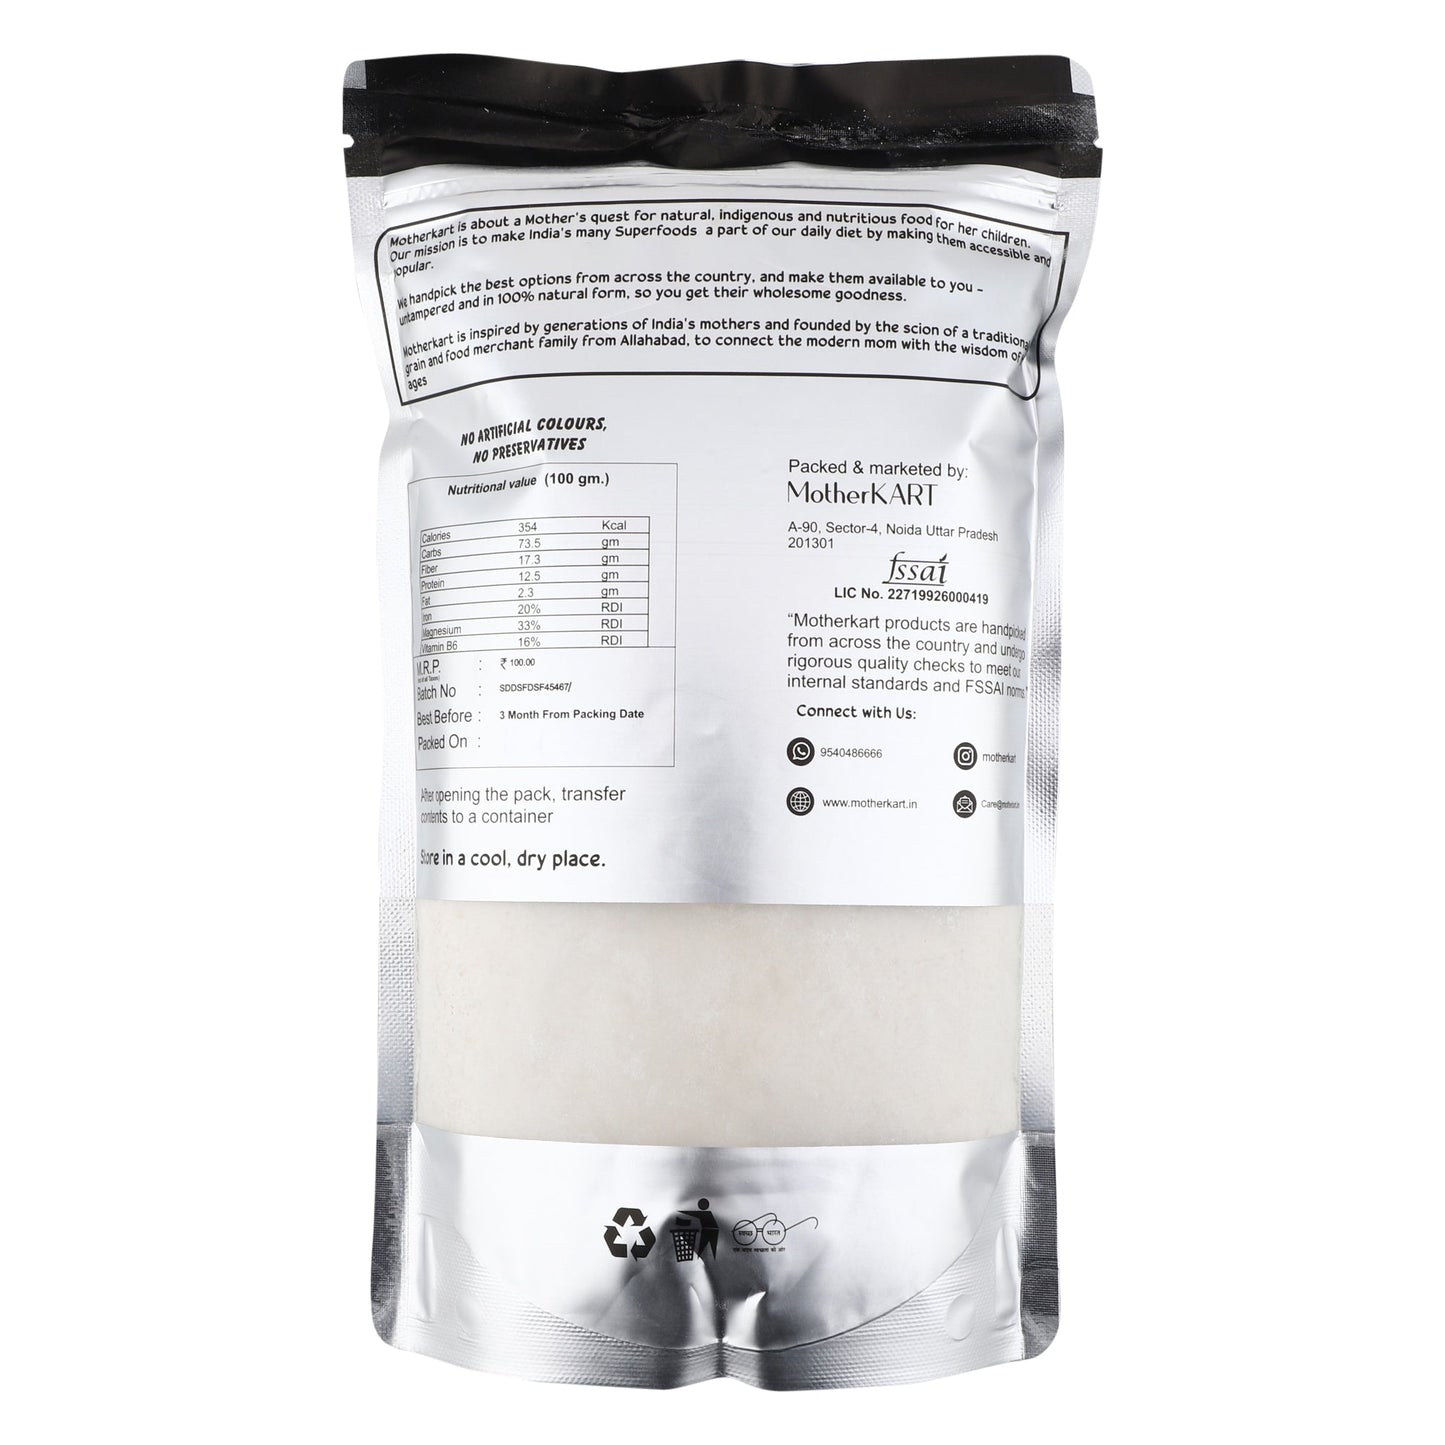 Motherkart Barley Flour (Jau Atta) - The best flour for Diabetics & Weight Loss- Super Saver 5Kg Pack